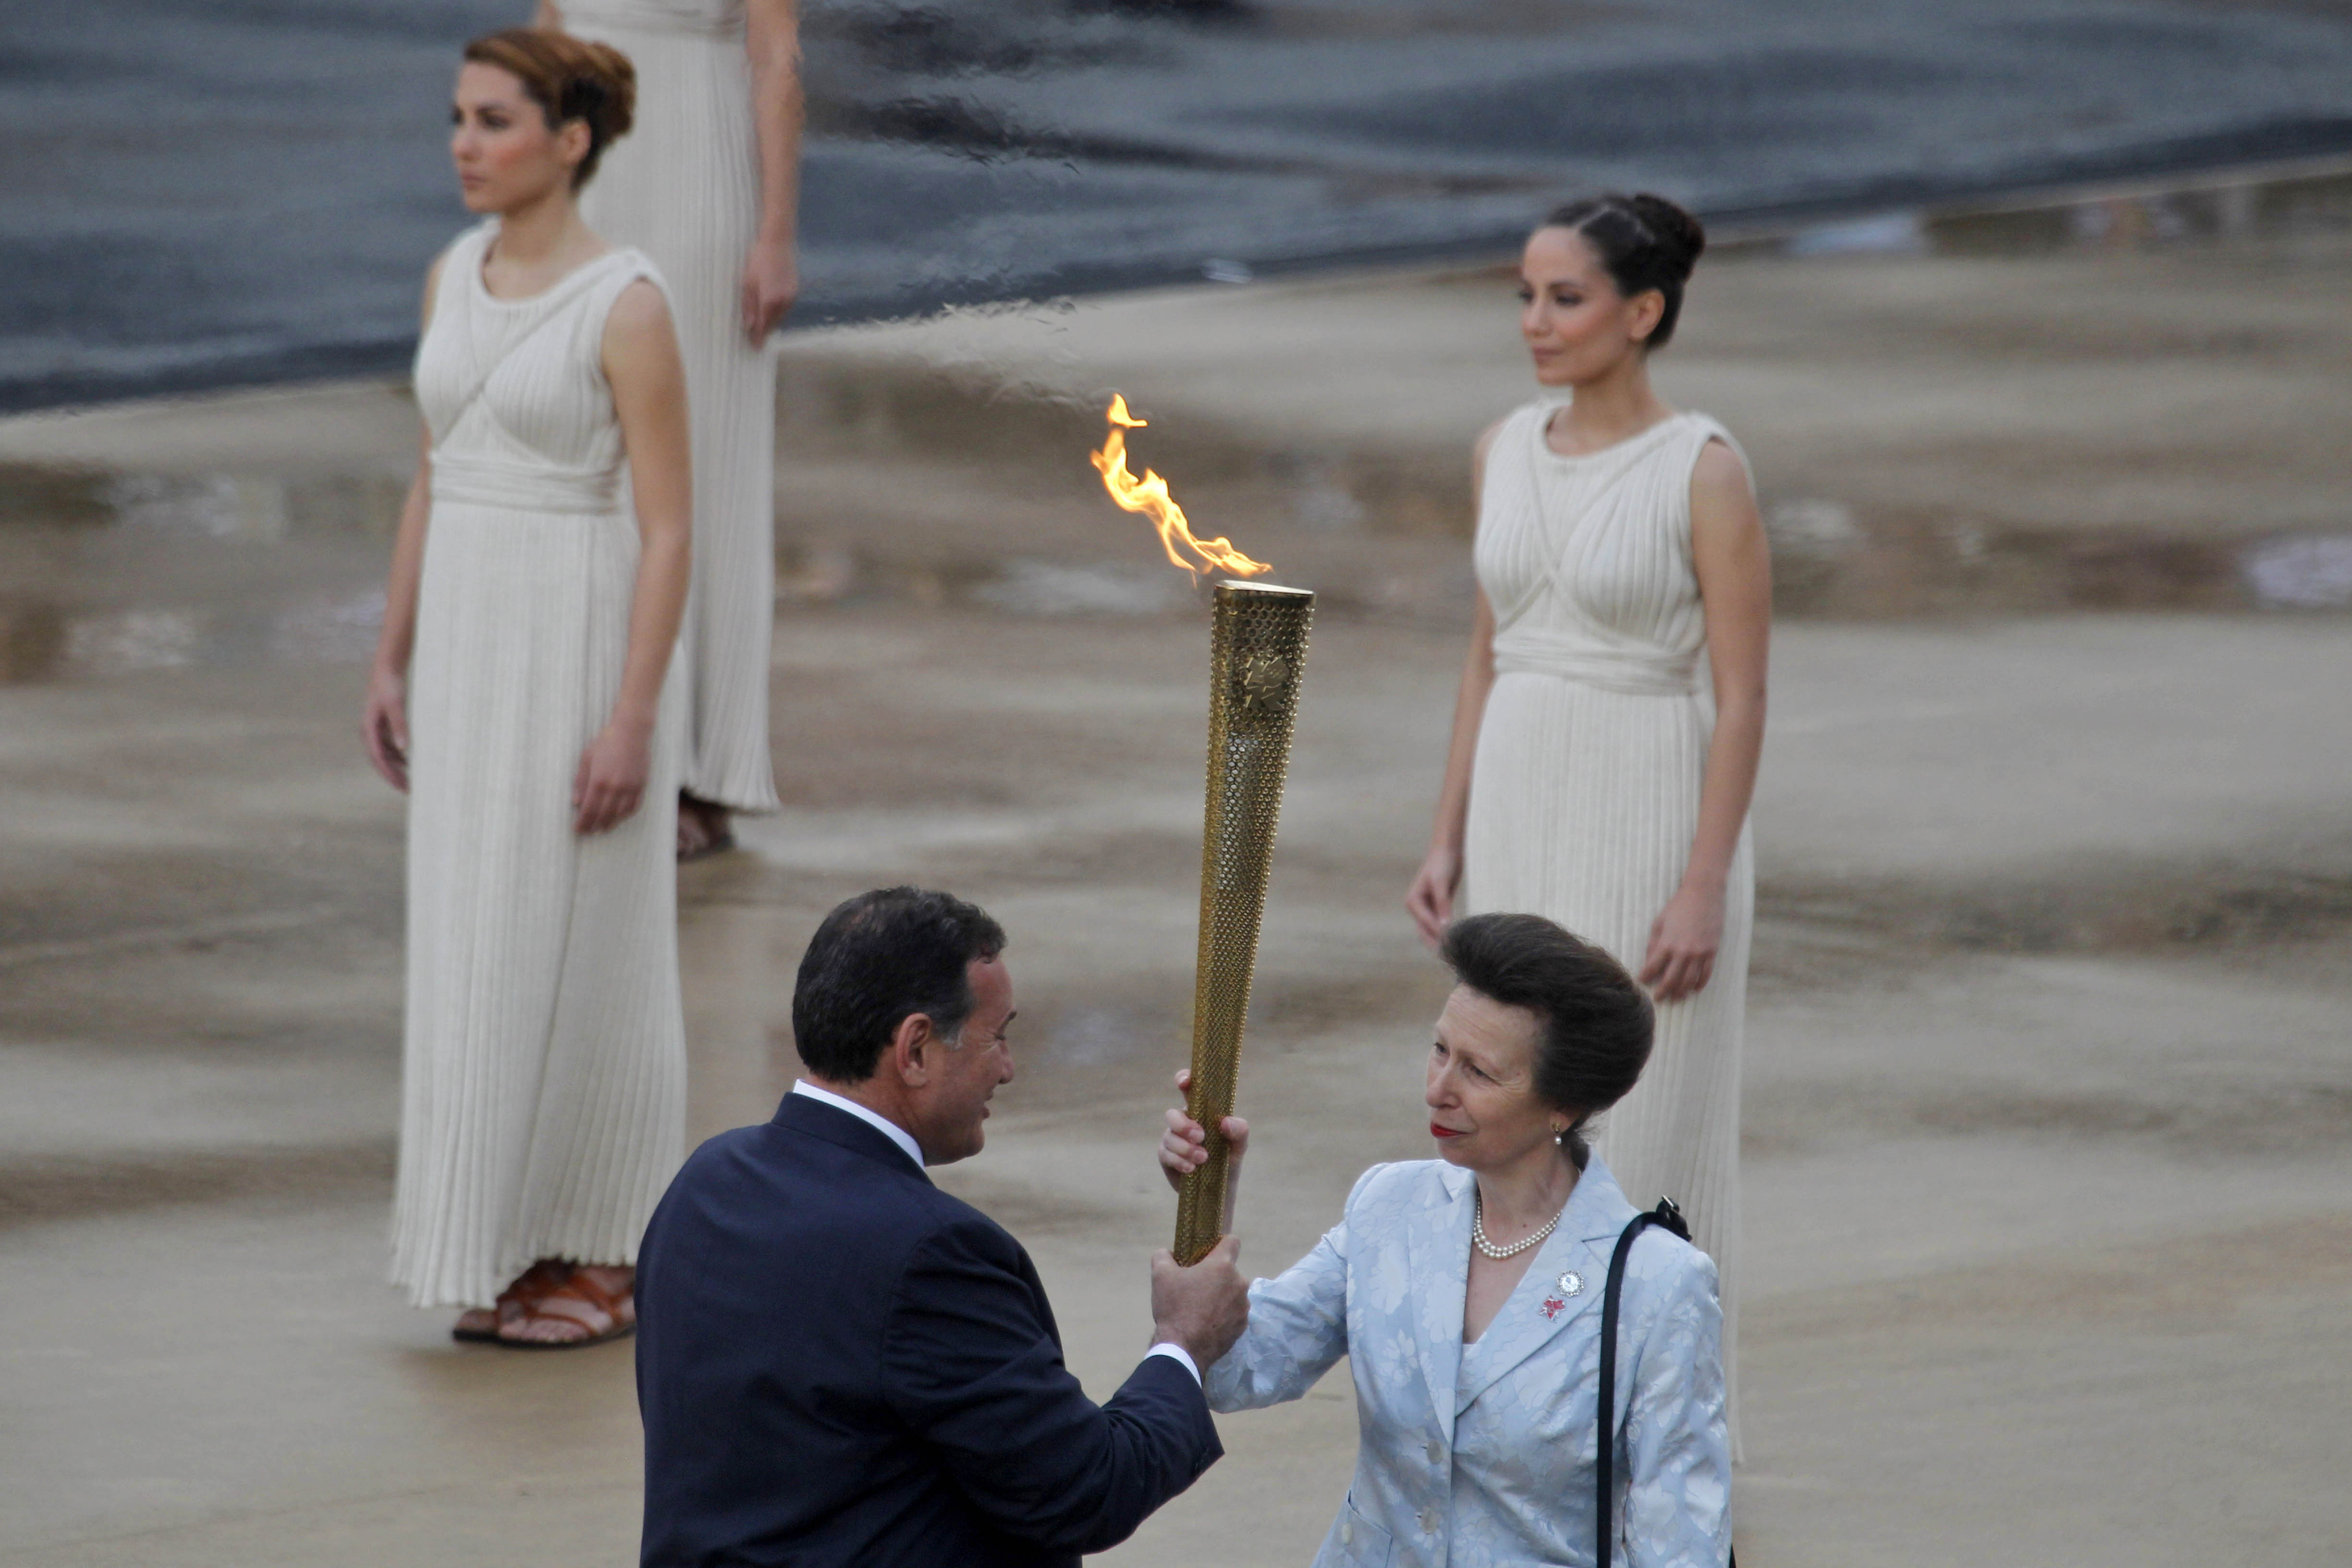 Princess Royal Olympic flame